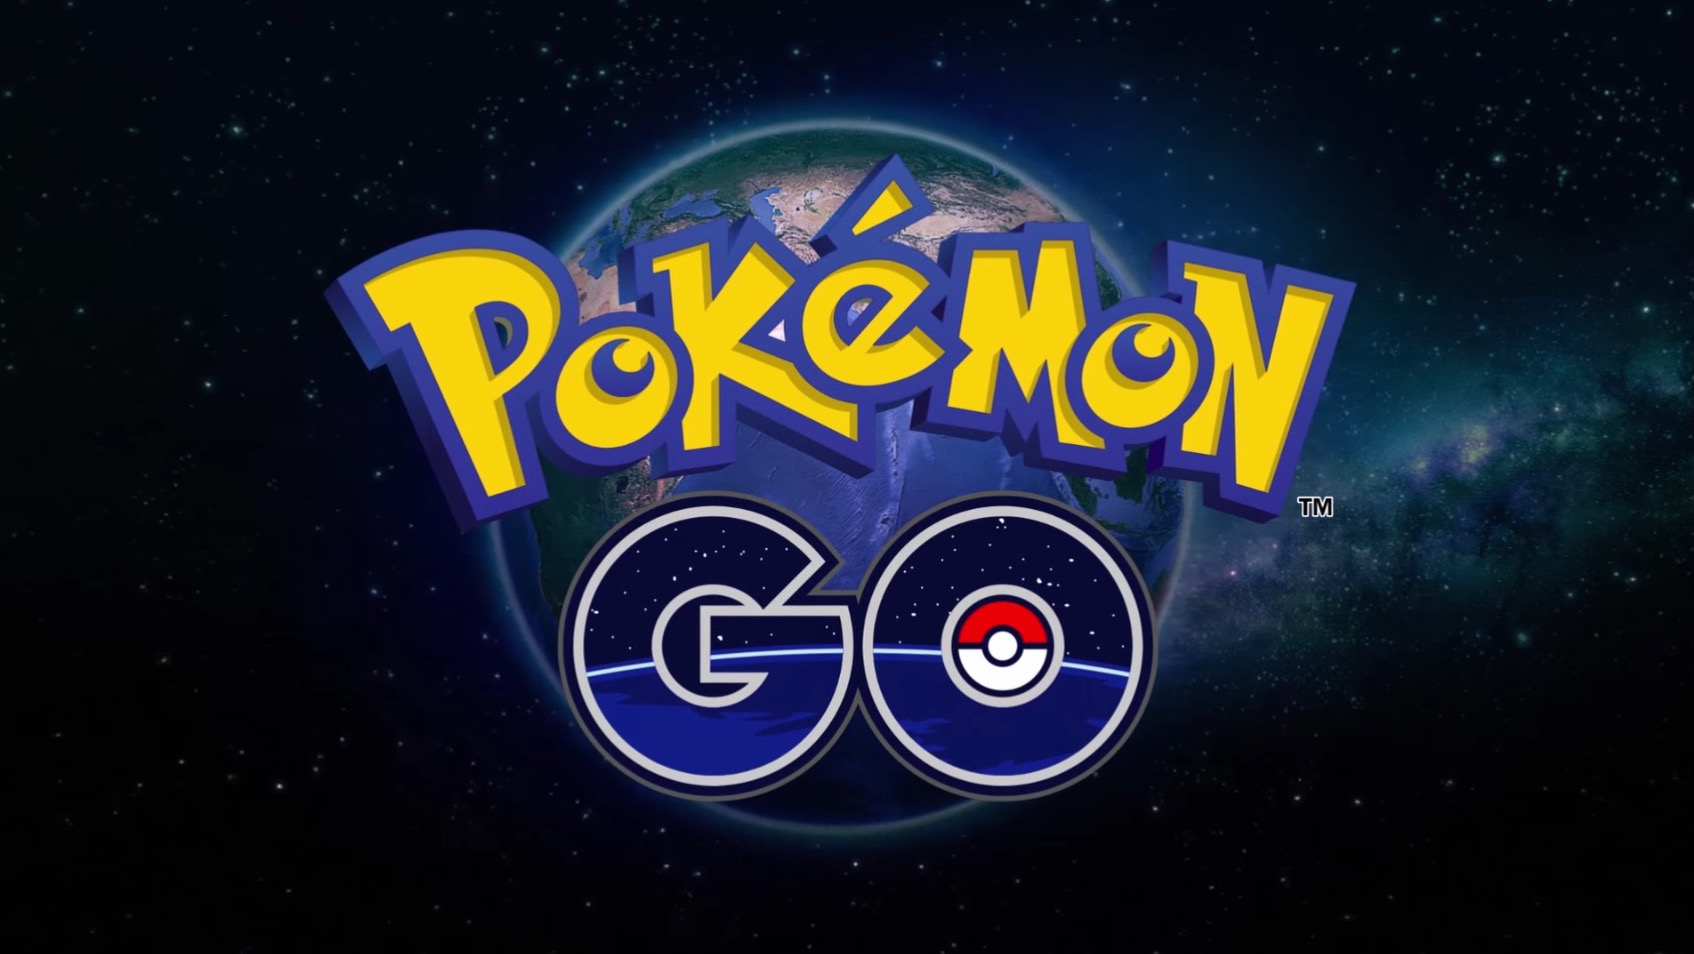 ポケモンの拡張現実ゲーム「Pokémon GO」、フィールドテストが本日開始